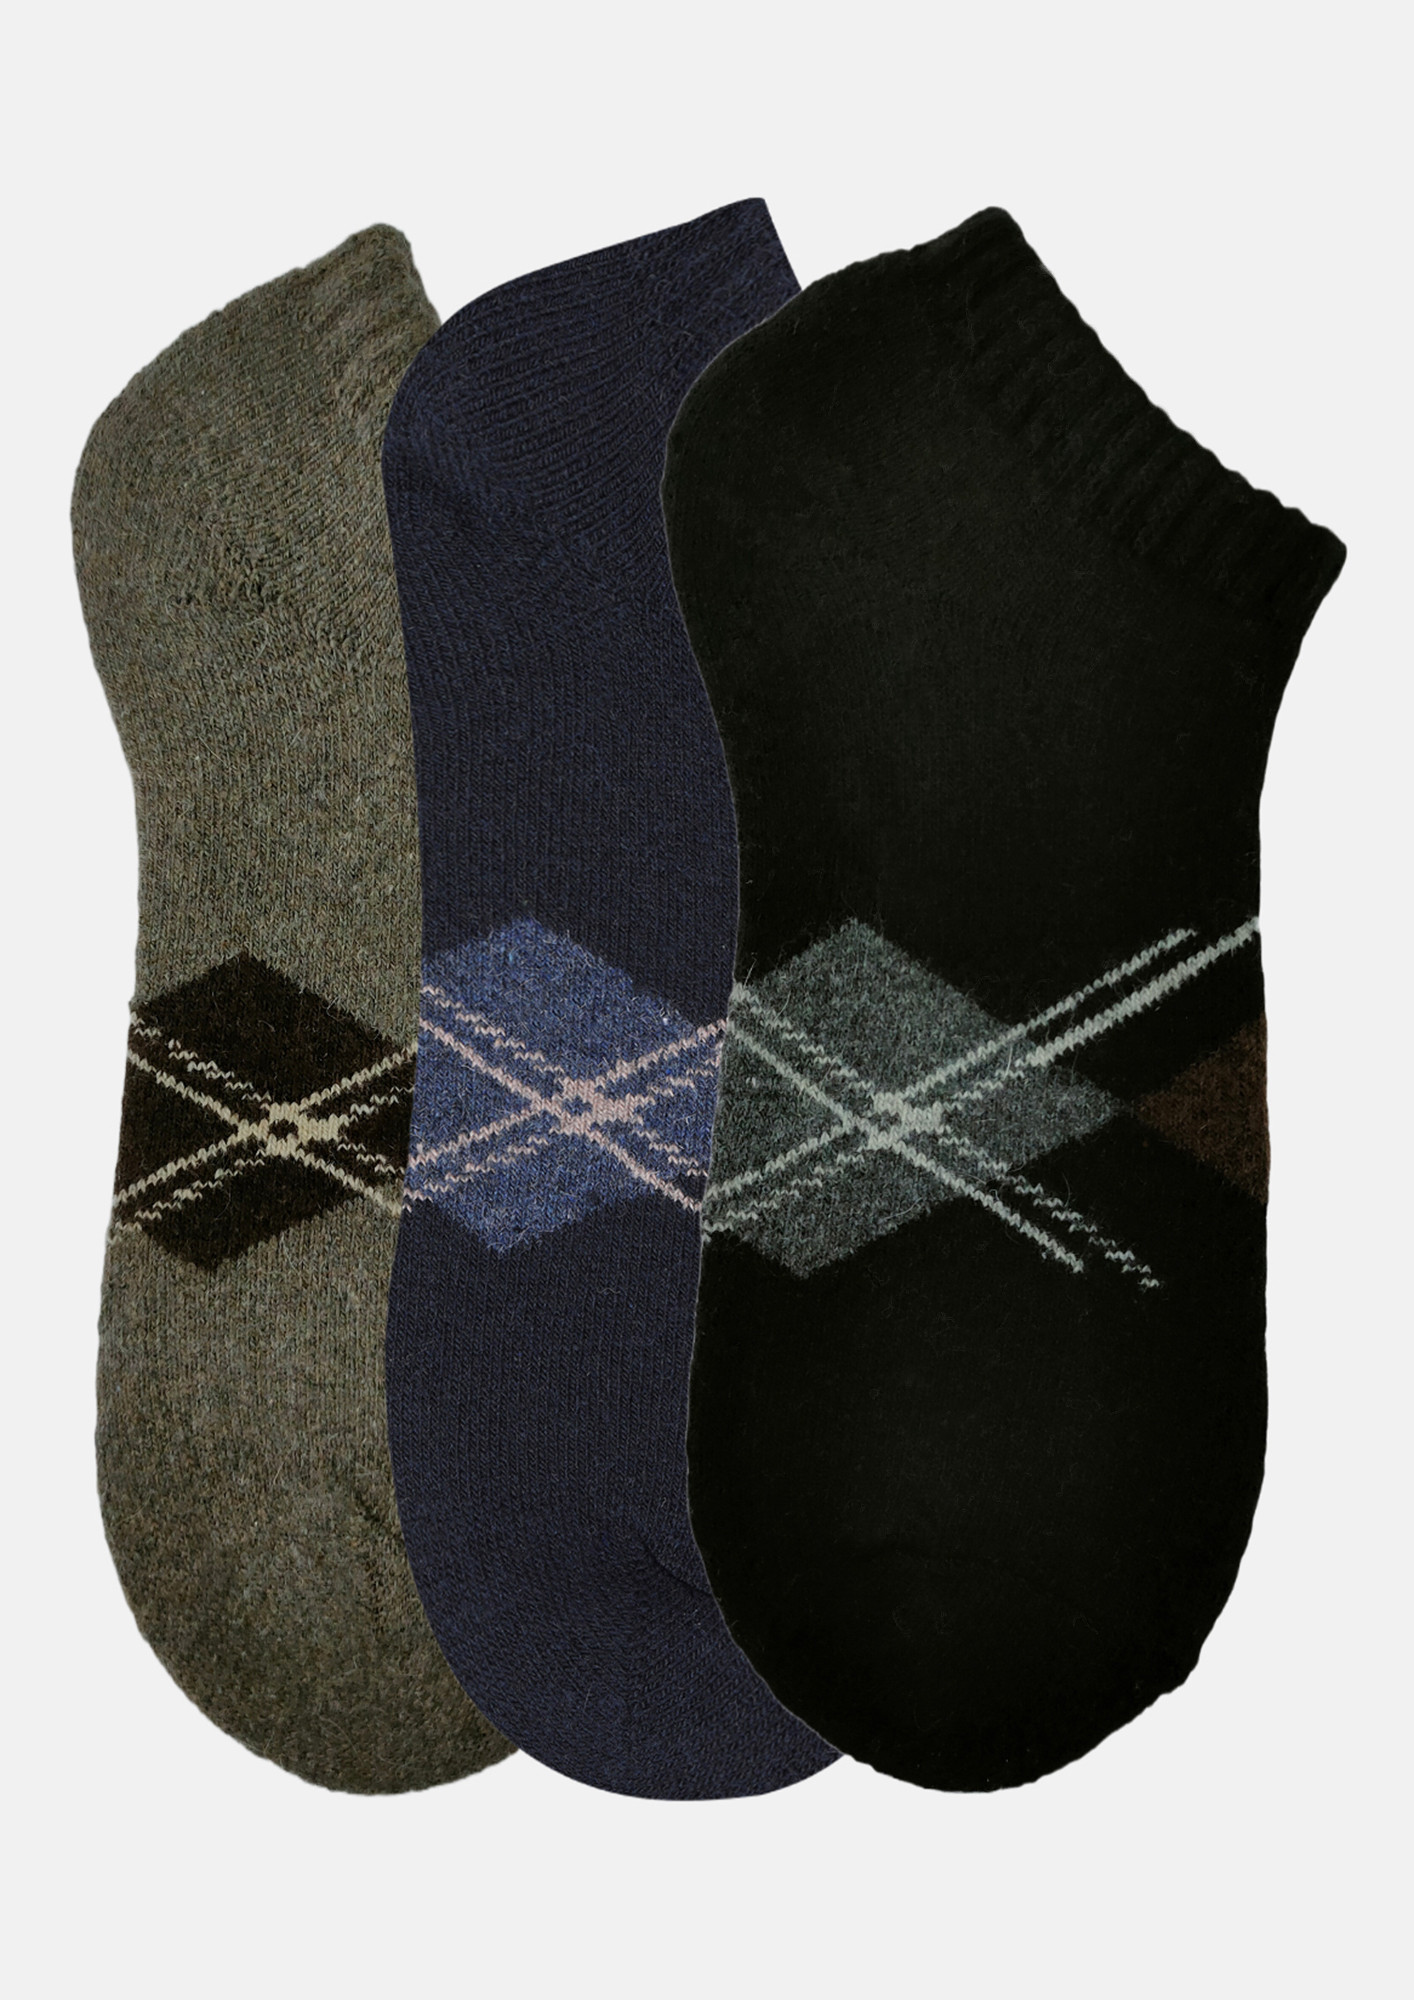 NEXT2SKIN Men Woolen Loafer Socks (Pack of 3) (Brown,Navy Blue,Black)